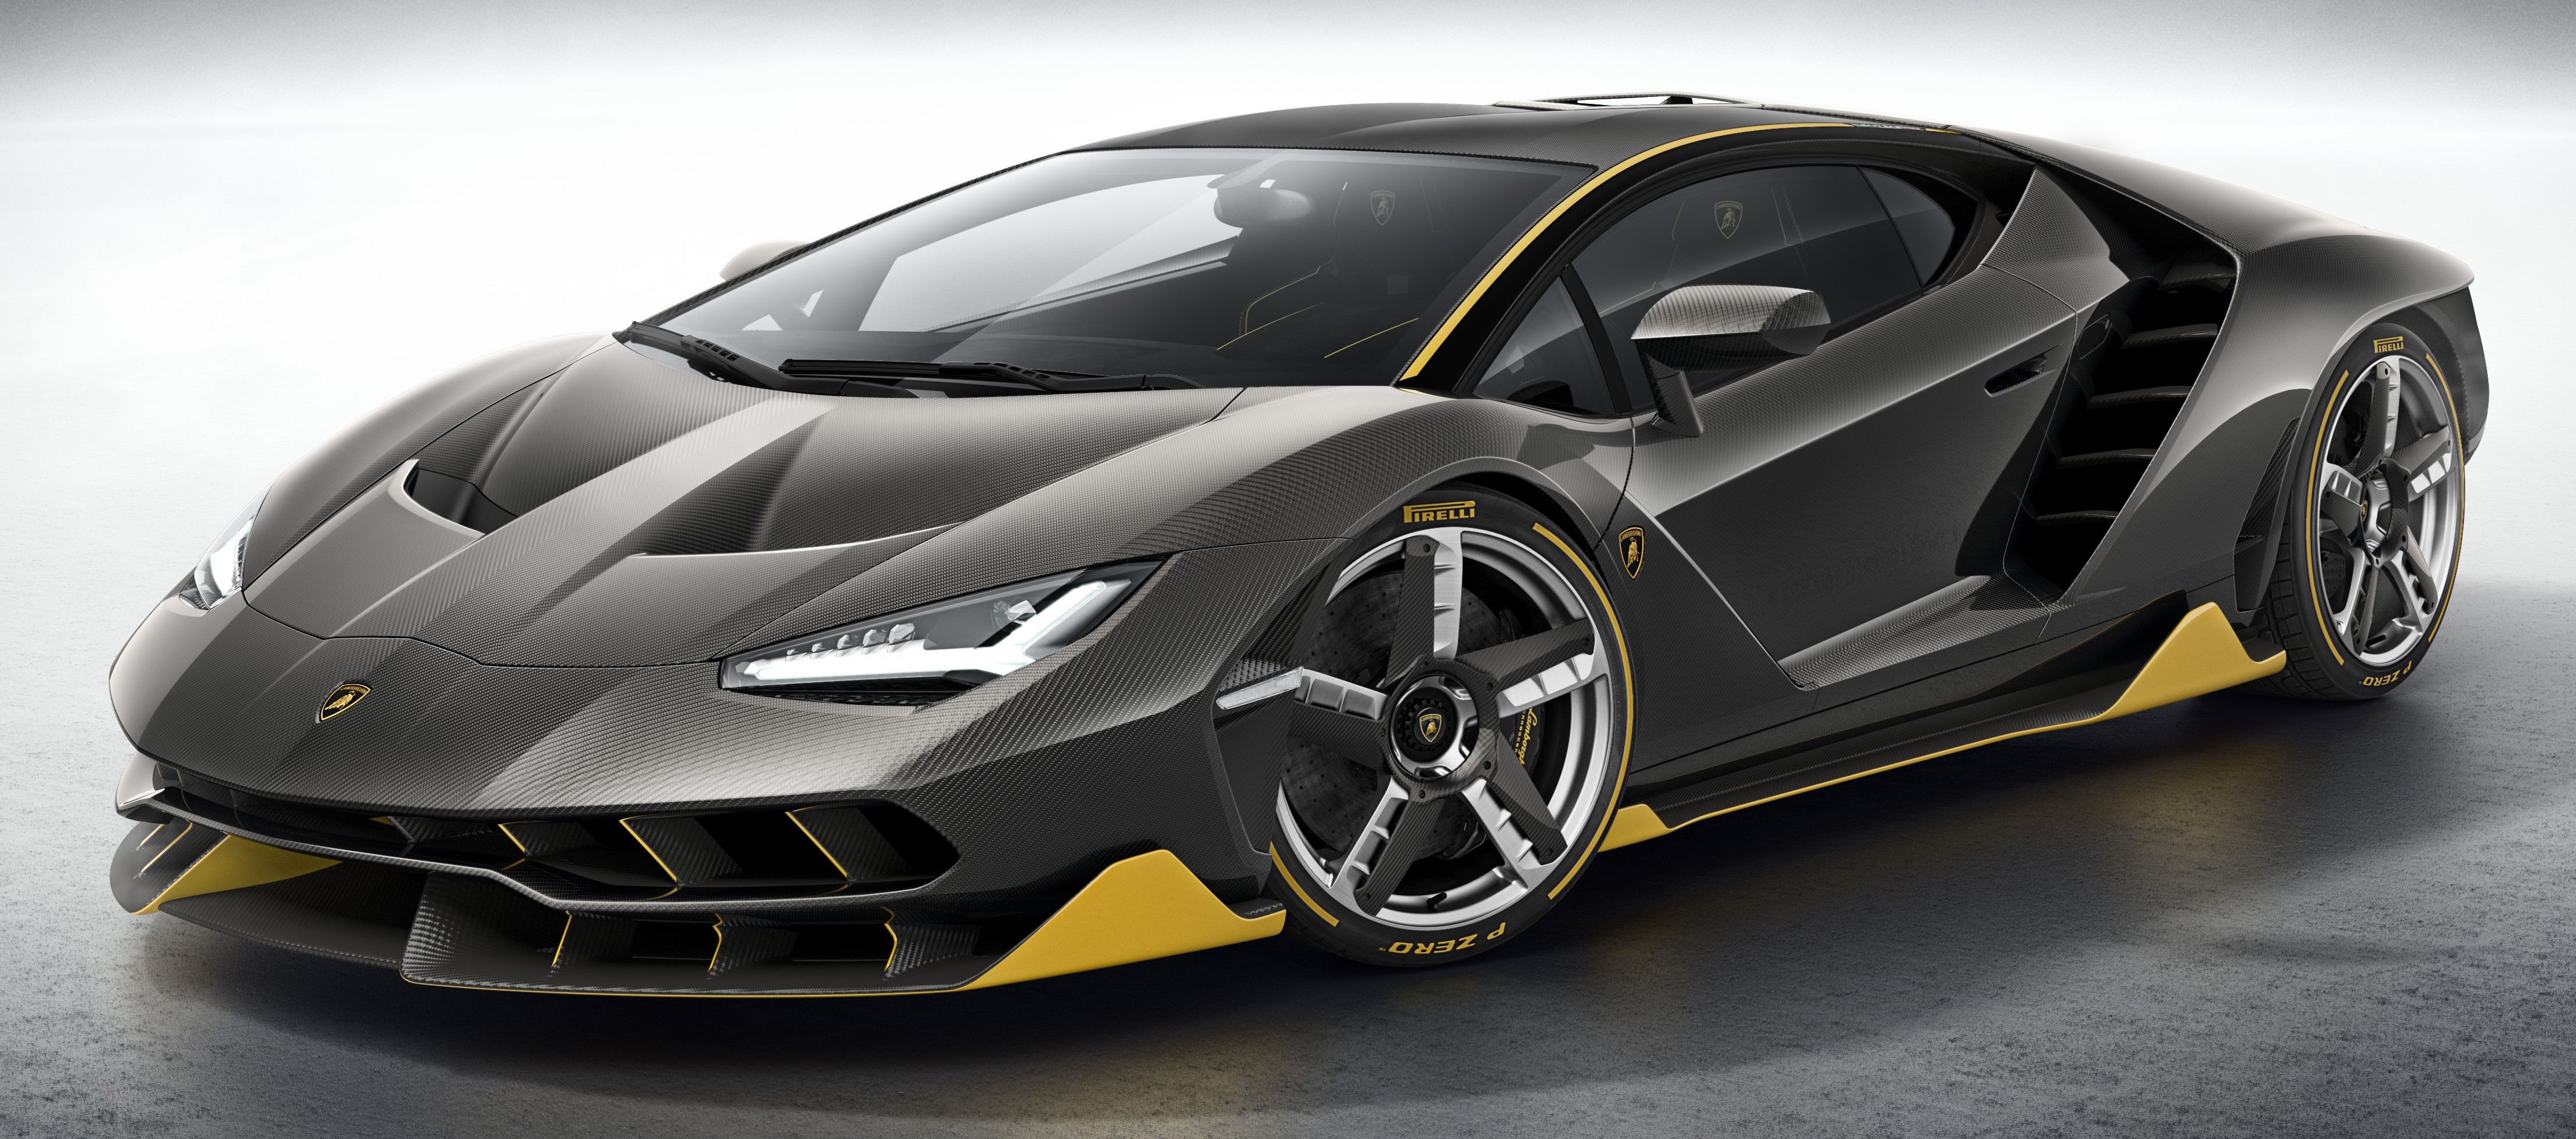 Lamborghini Centenario debuts - 770 hp, RM8 million Paul ...